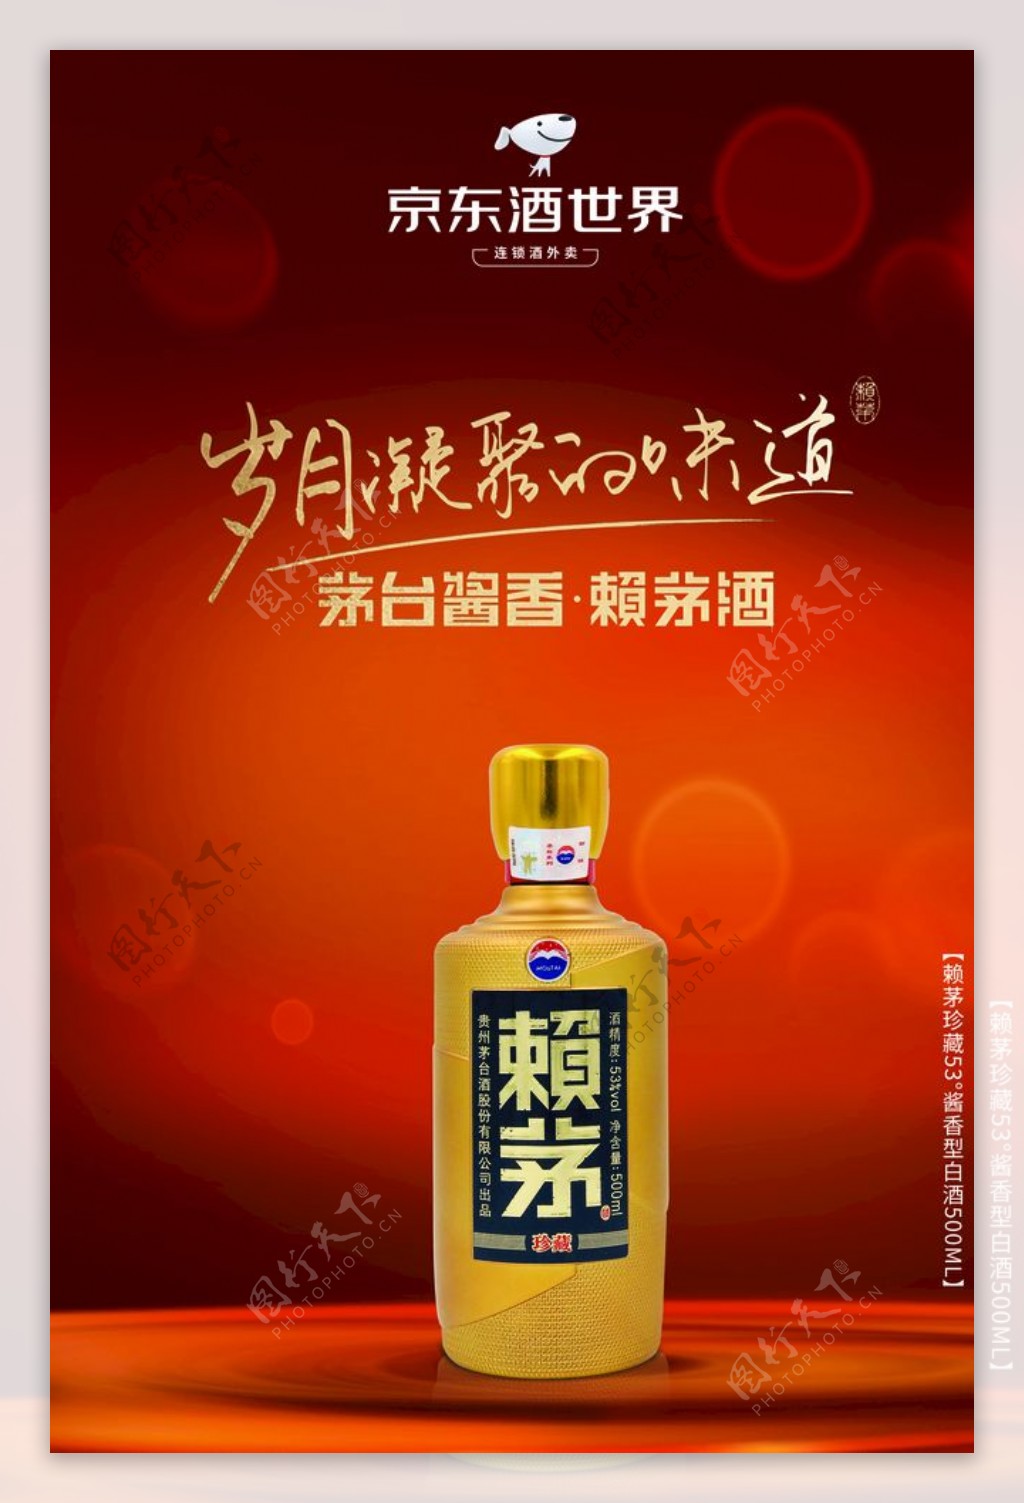 京东酒世界